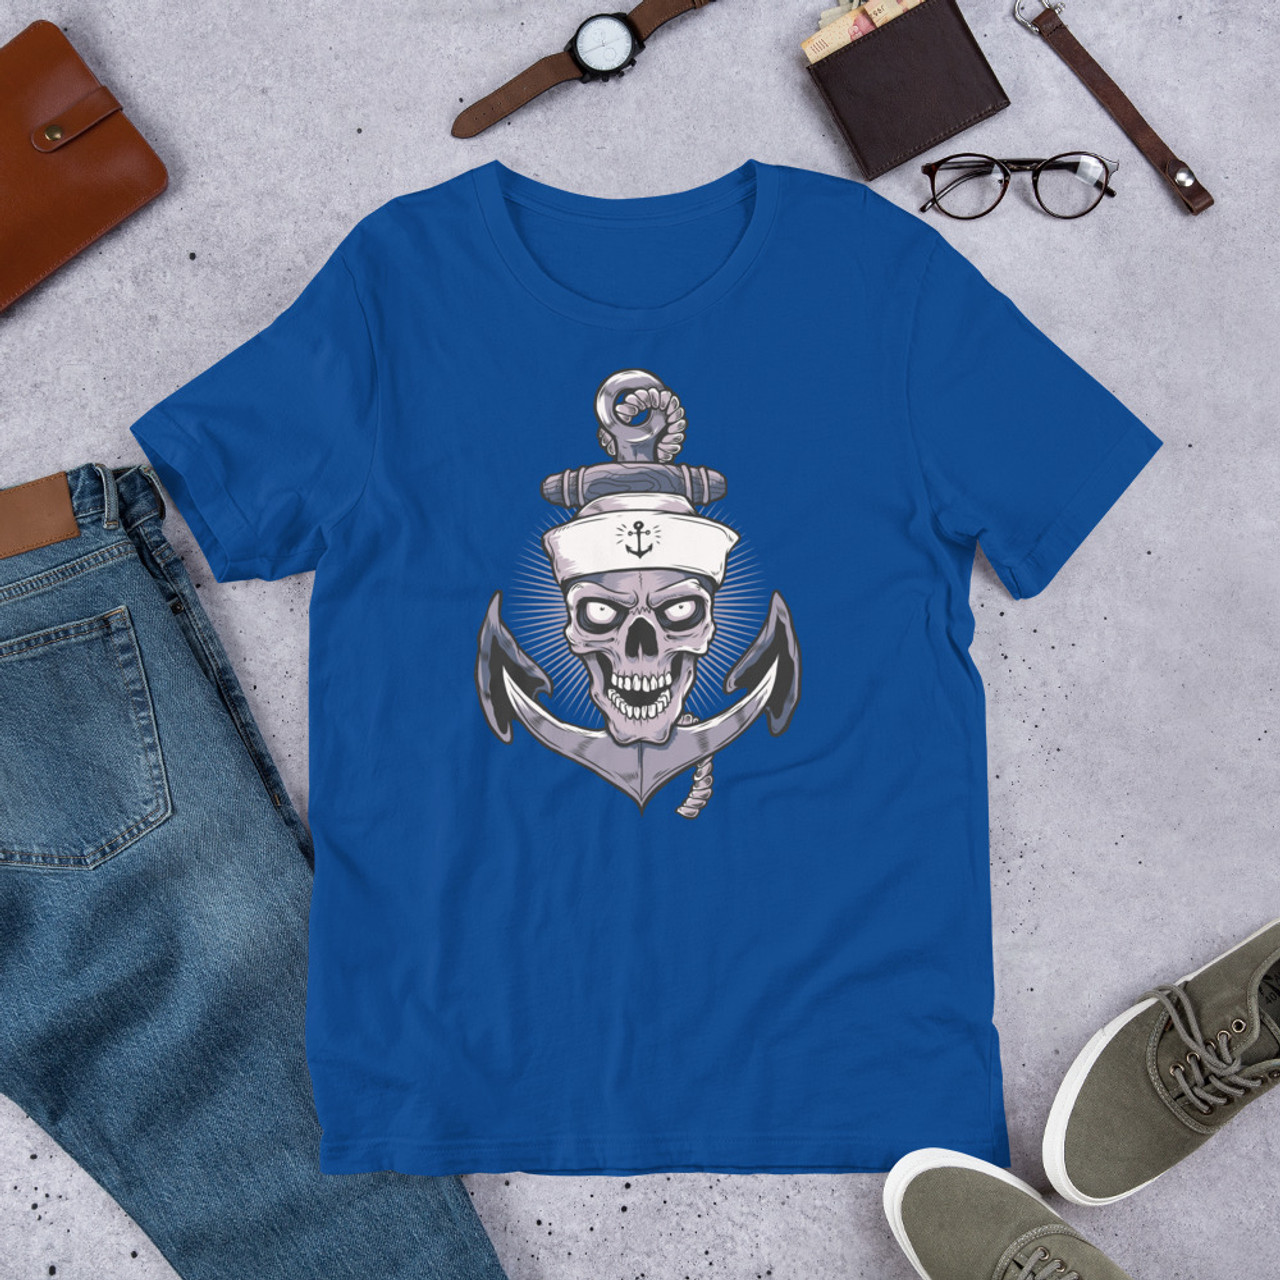 True Royal T-Shirt - Bella + Canvas 3001 Anchor Skull